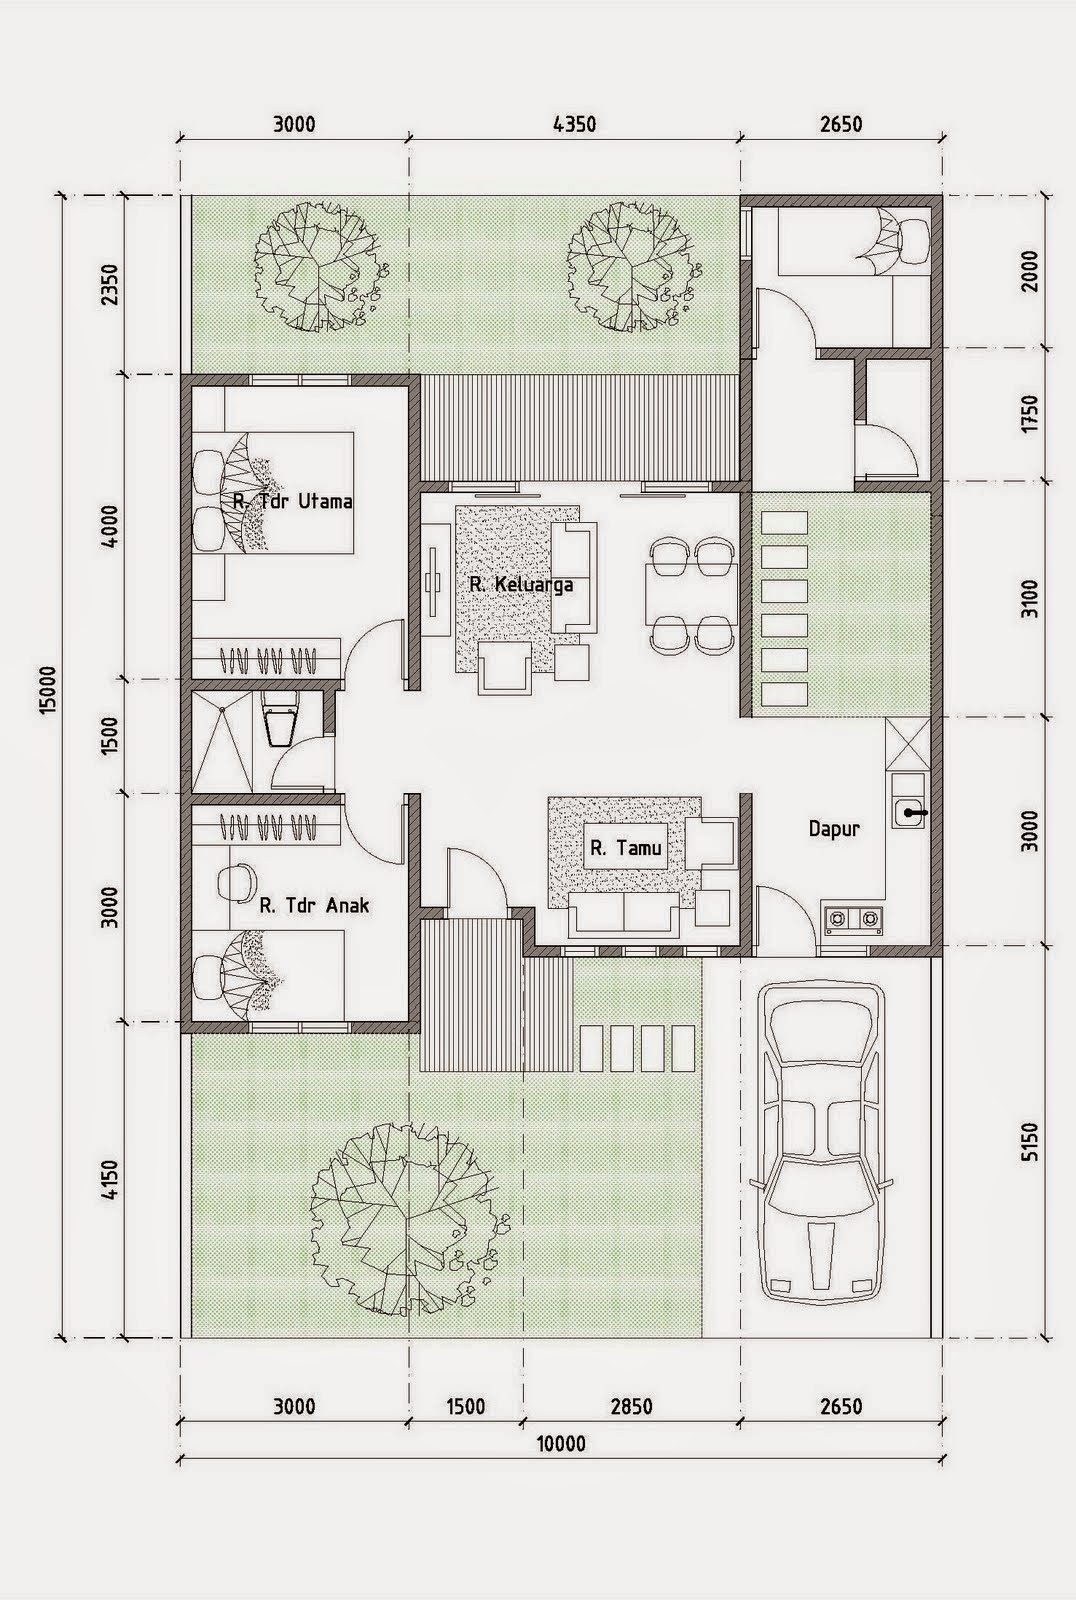 106 Desain Rumah Minimalis Modern Luas 100 Meter Gambar Desain